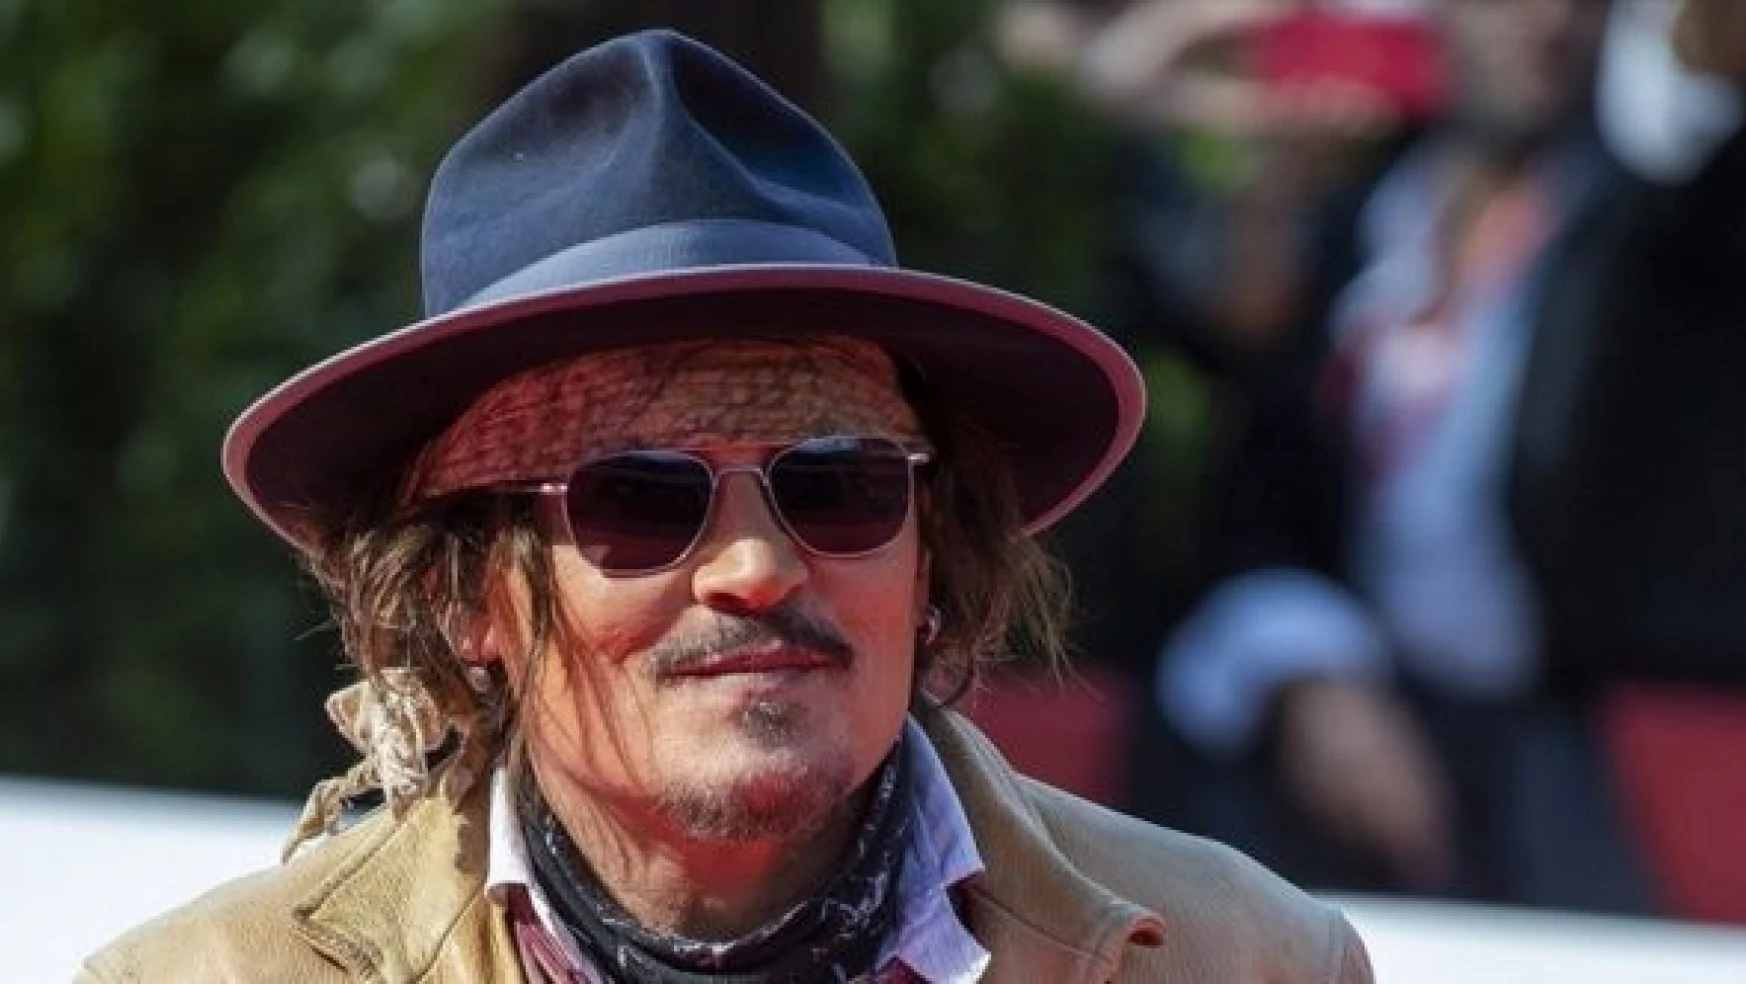 Hollywood oyuncusu Johnny Depp, eski eşinden 15 milyon dolar tazminat kazandı